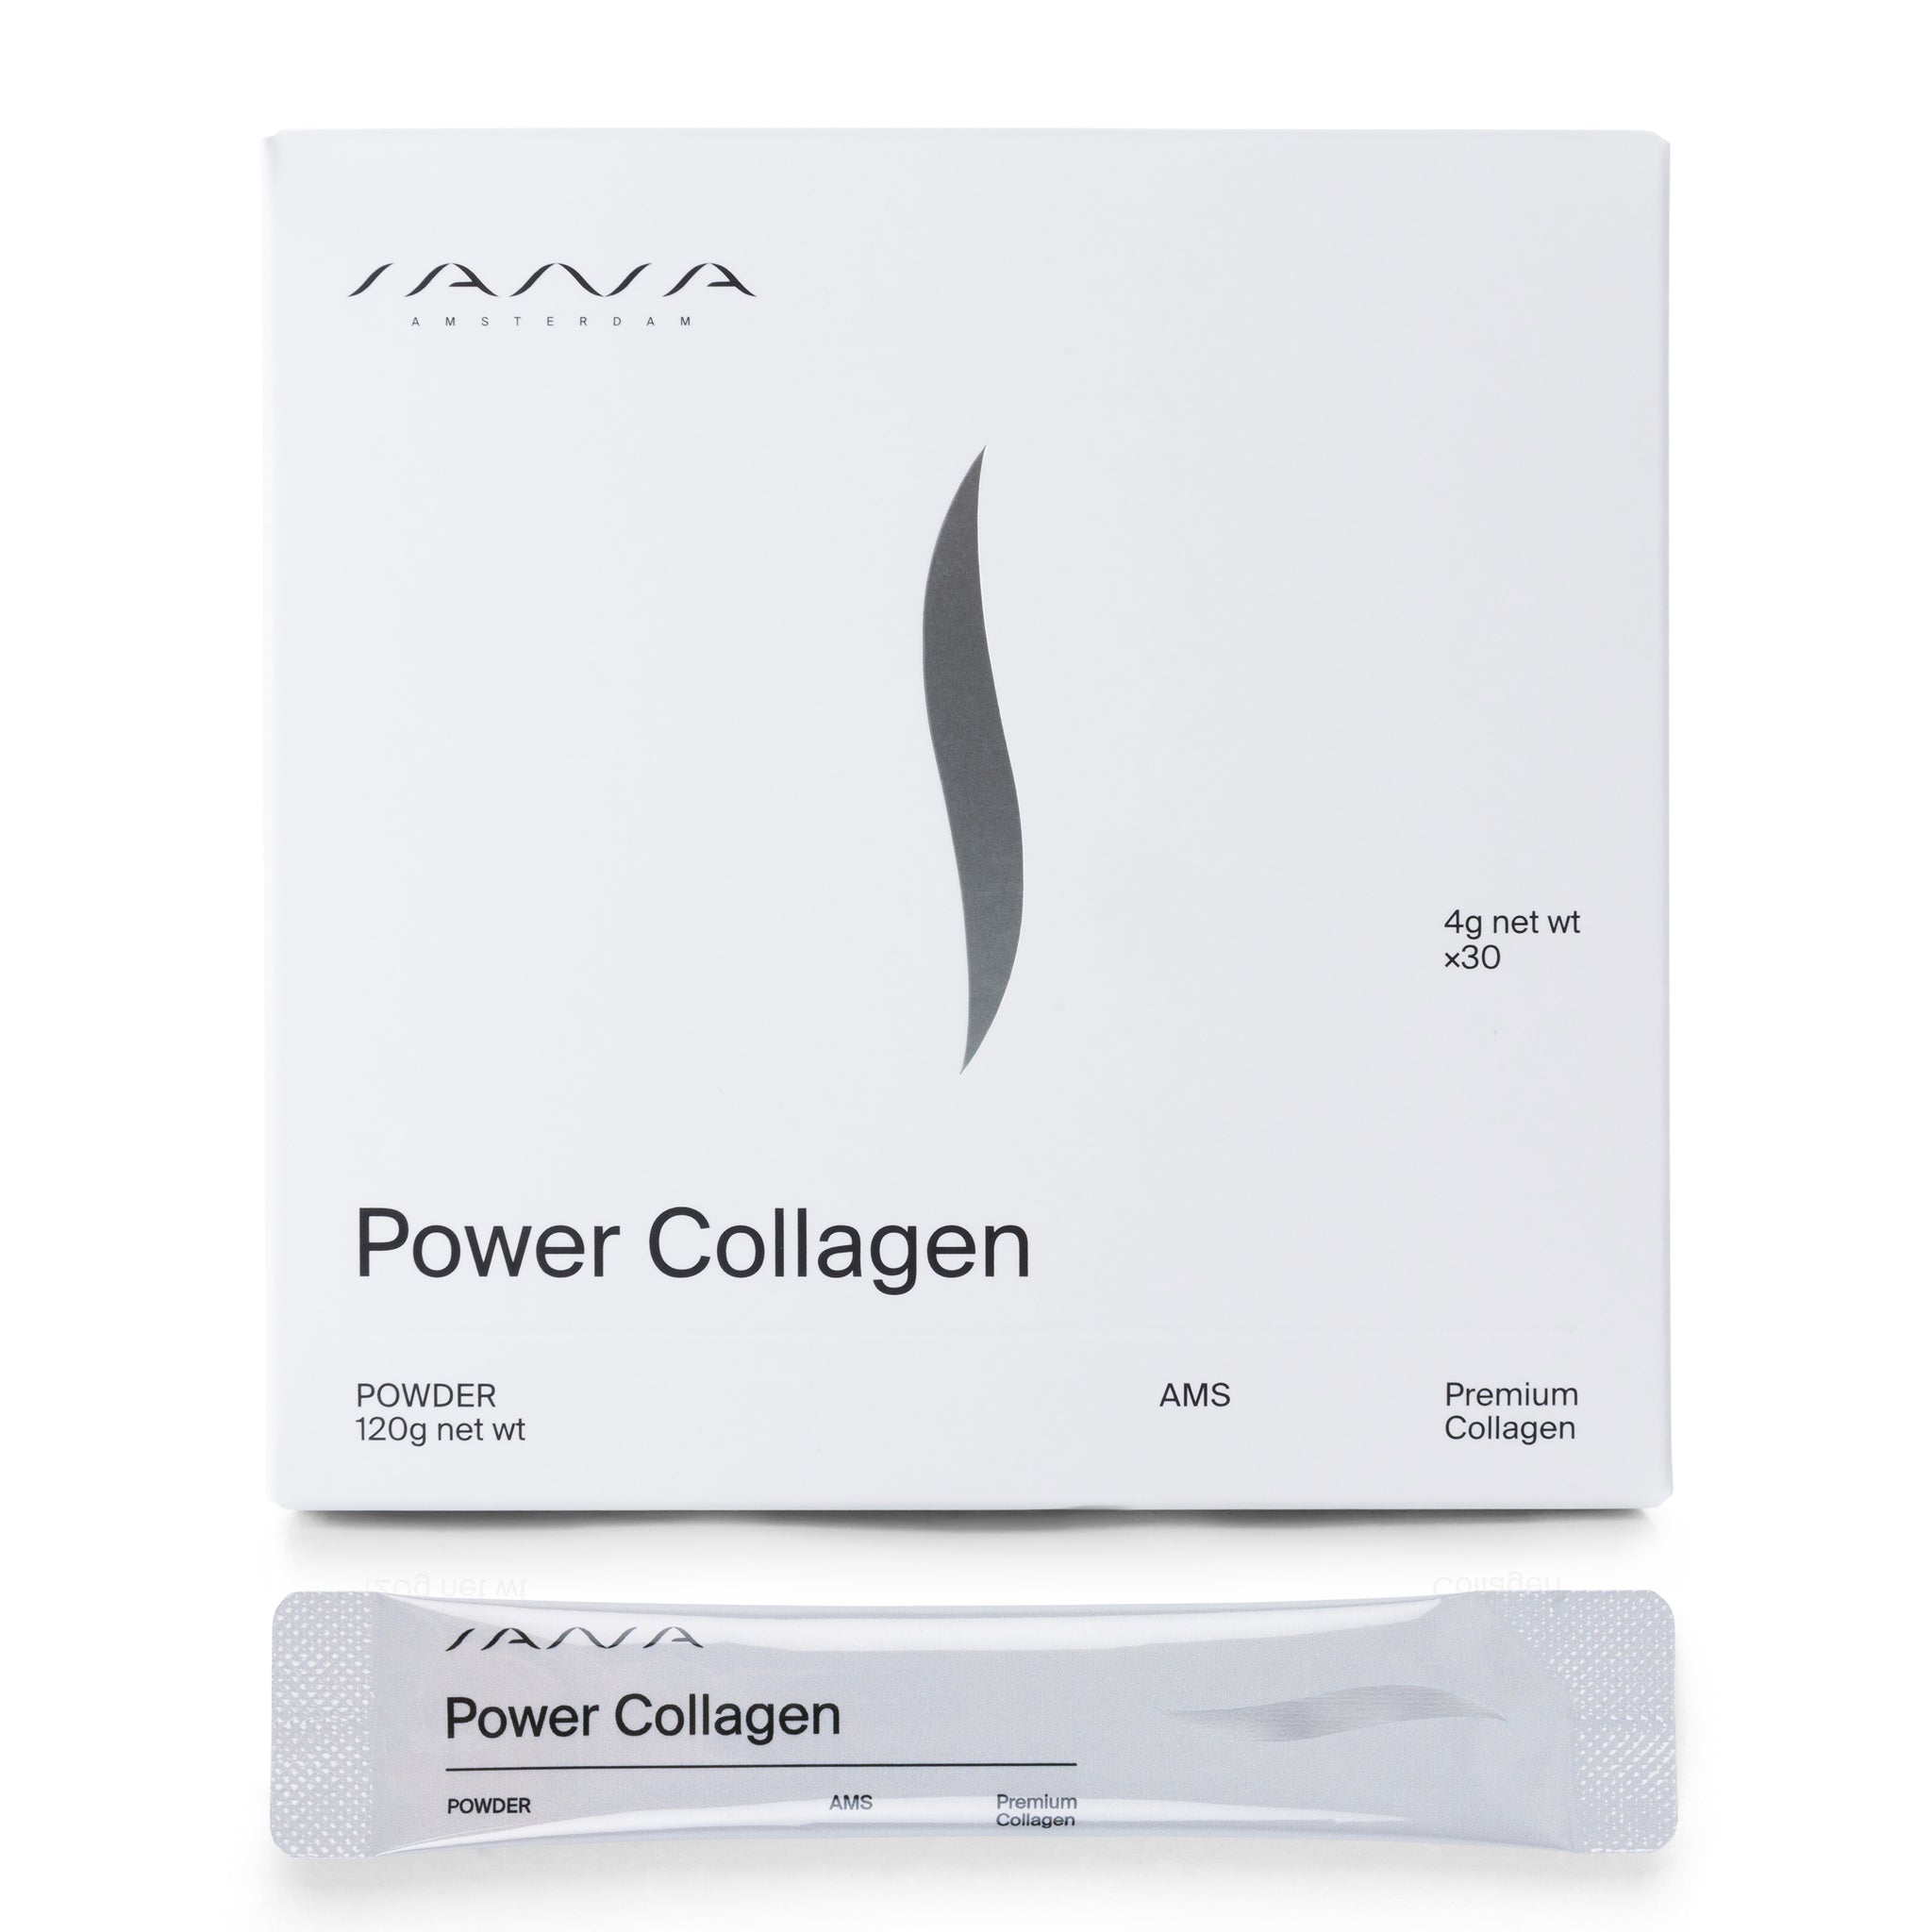 Power Collagen Powder Sachets